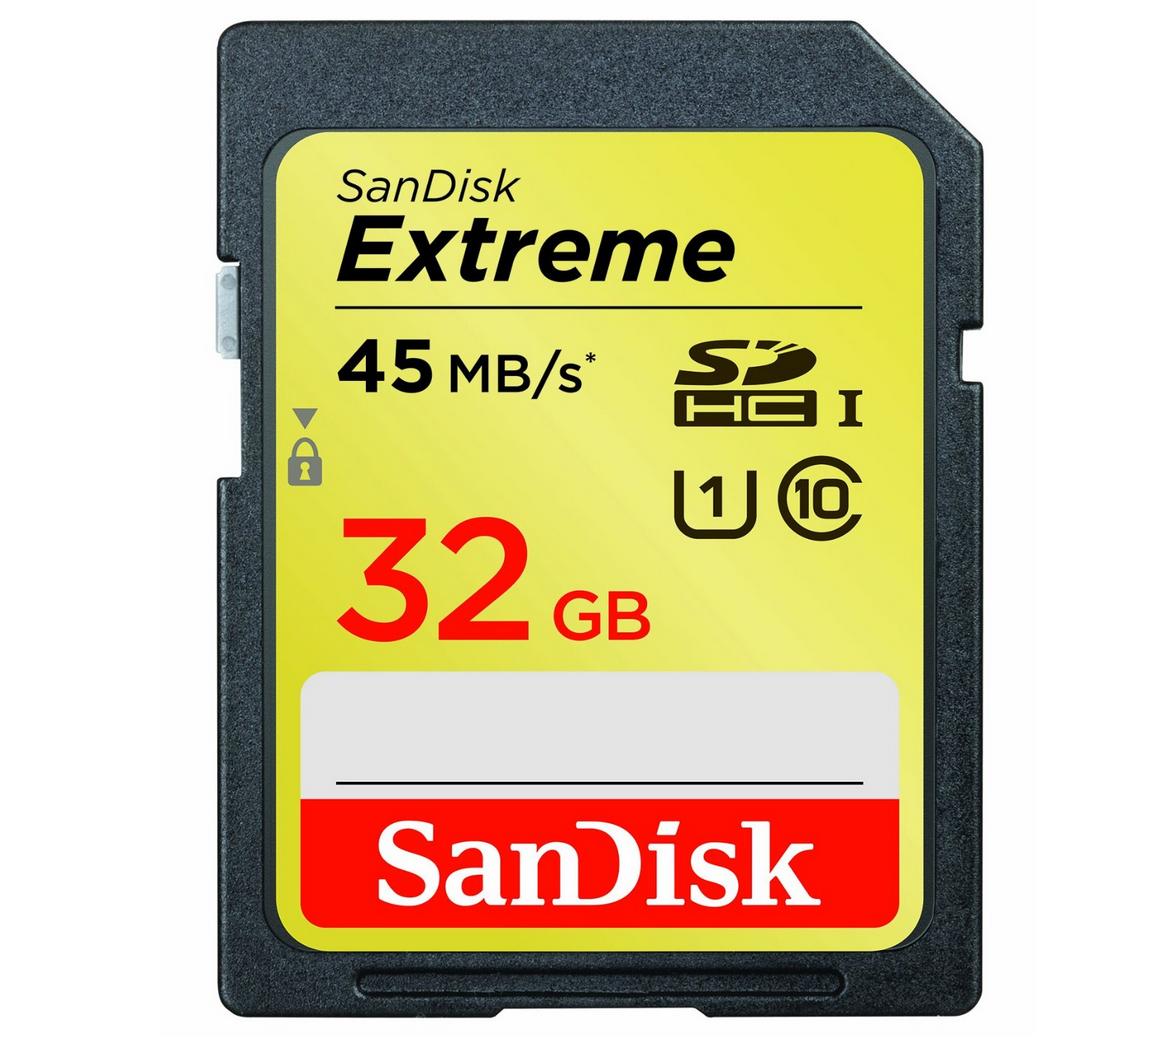 [AMAZON.DE] Speicherdeal! SanDisk Extreme SDHC 32GB Speicherkarte 3A150957 für nur 25,90 Euro inkl. Versand!